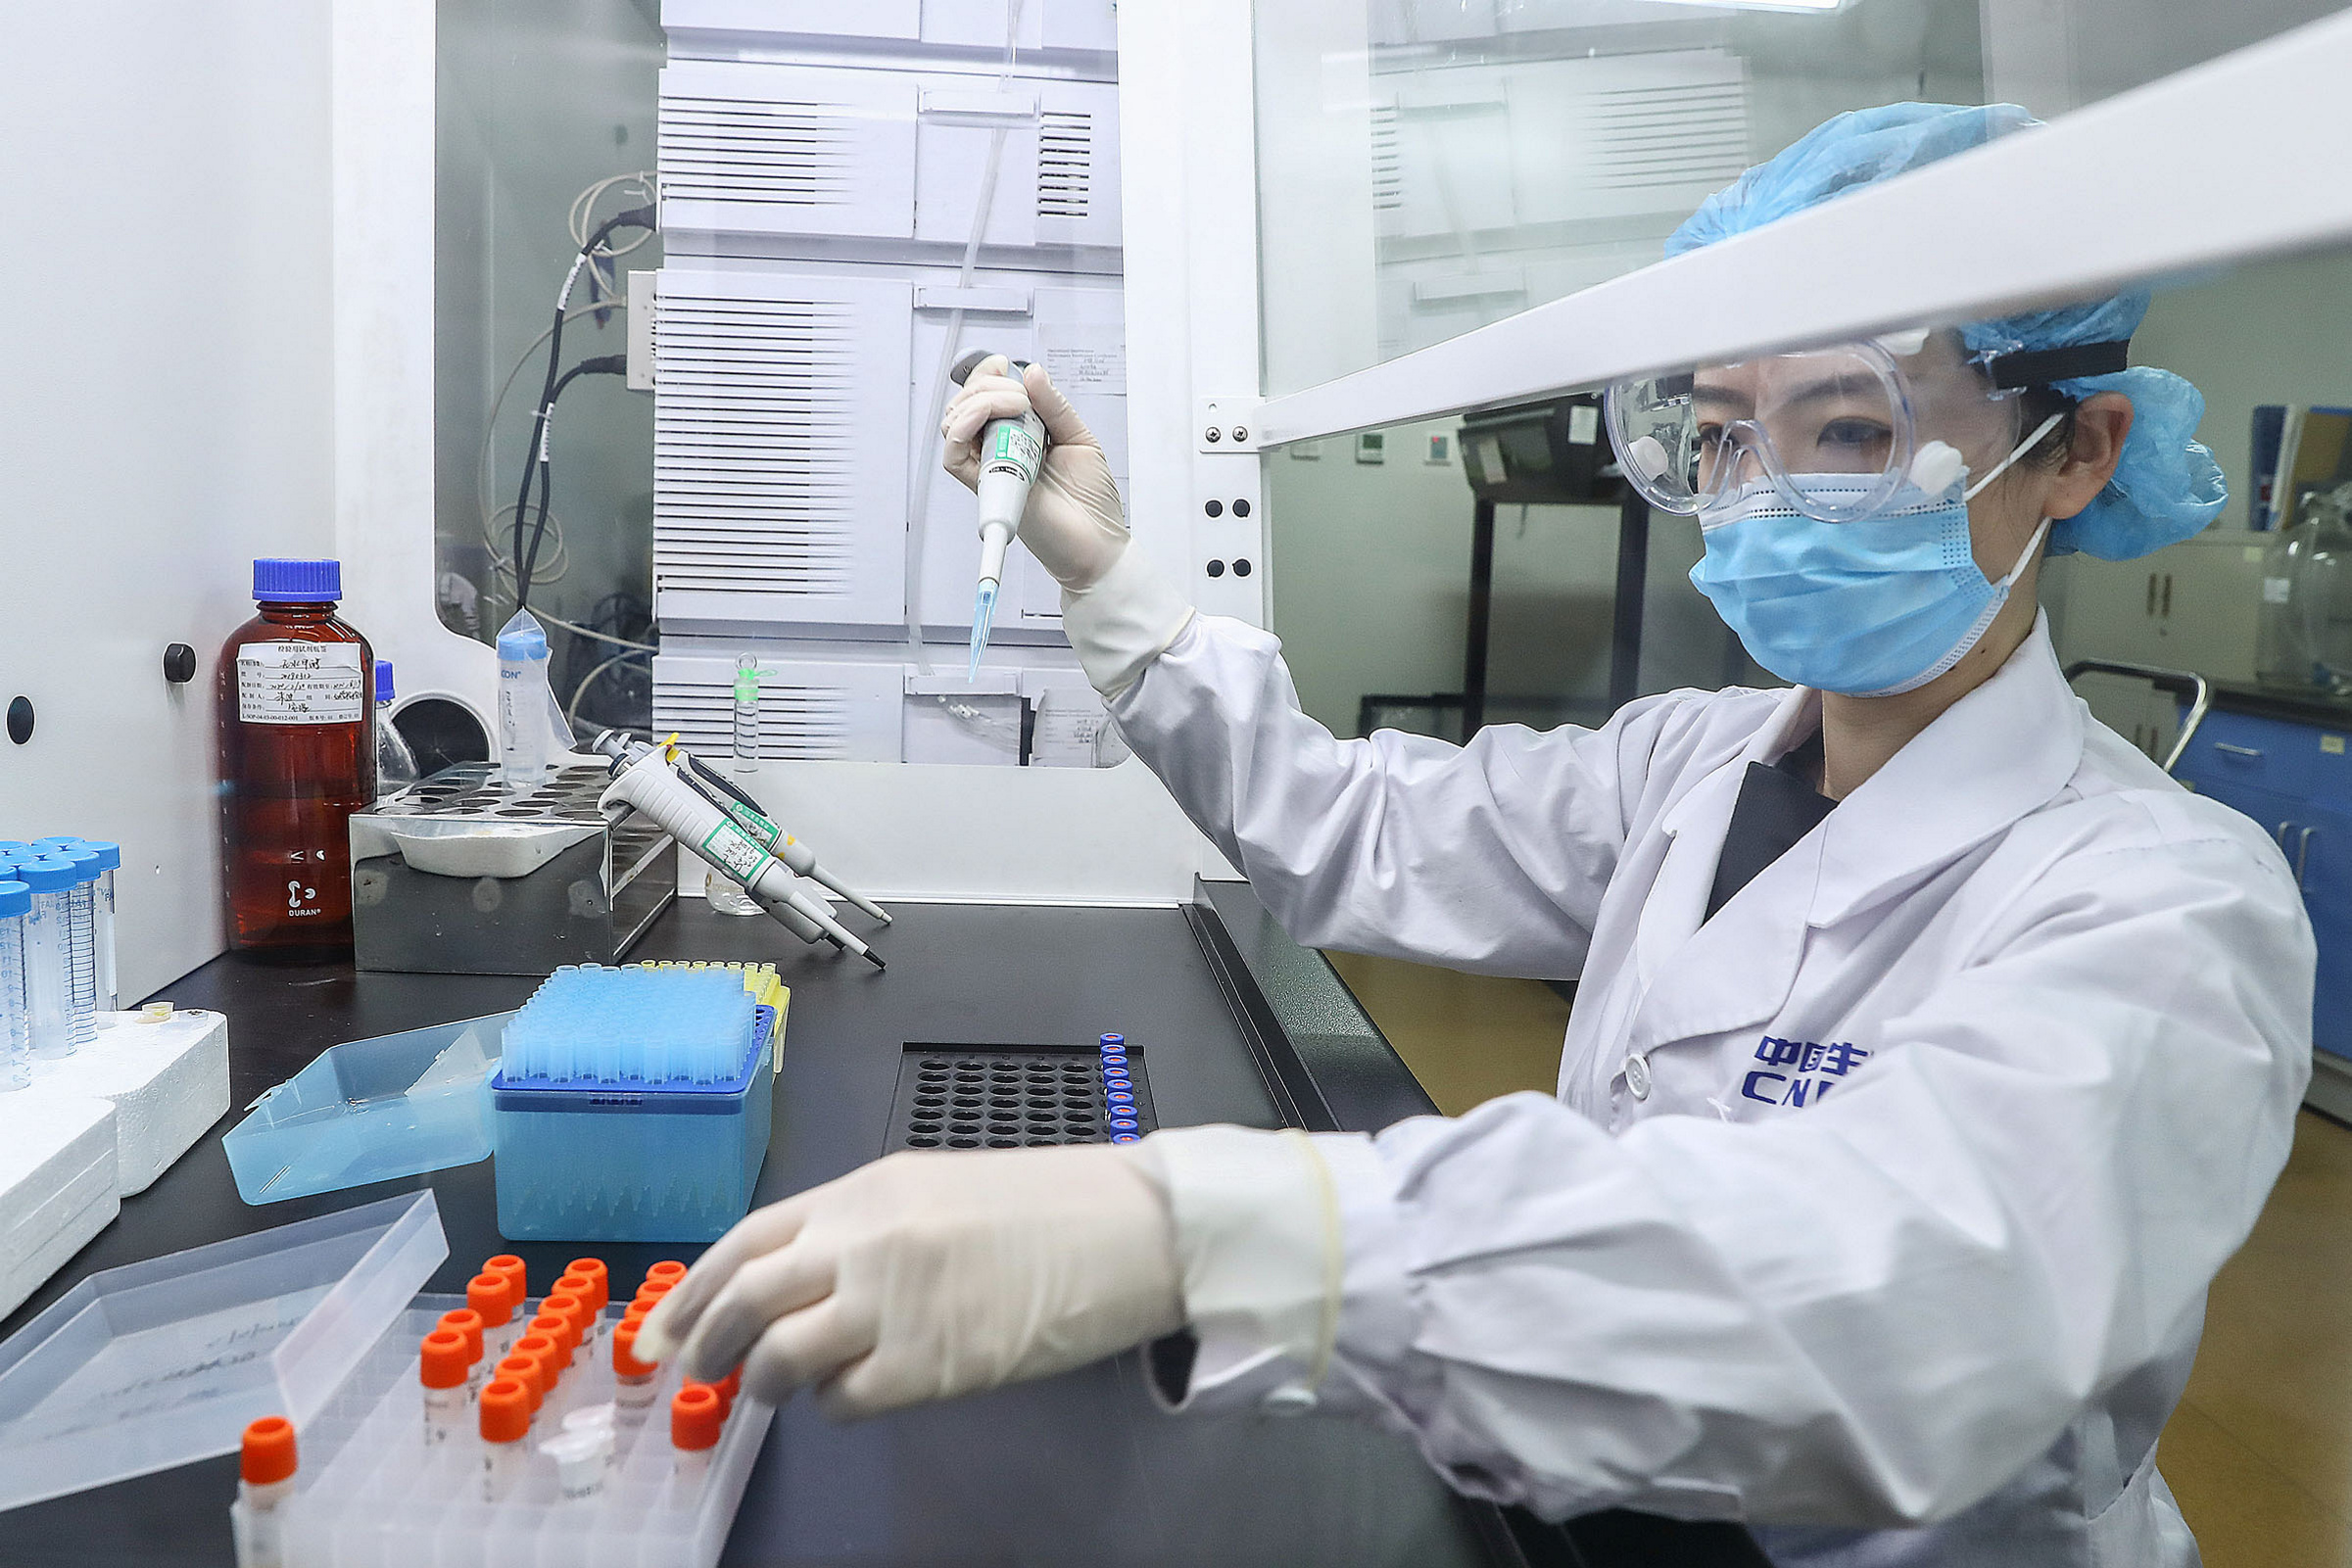 No habrá respuestas inmediatas, advierten científicos que investigan origen de COVID-19 en Wuhan